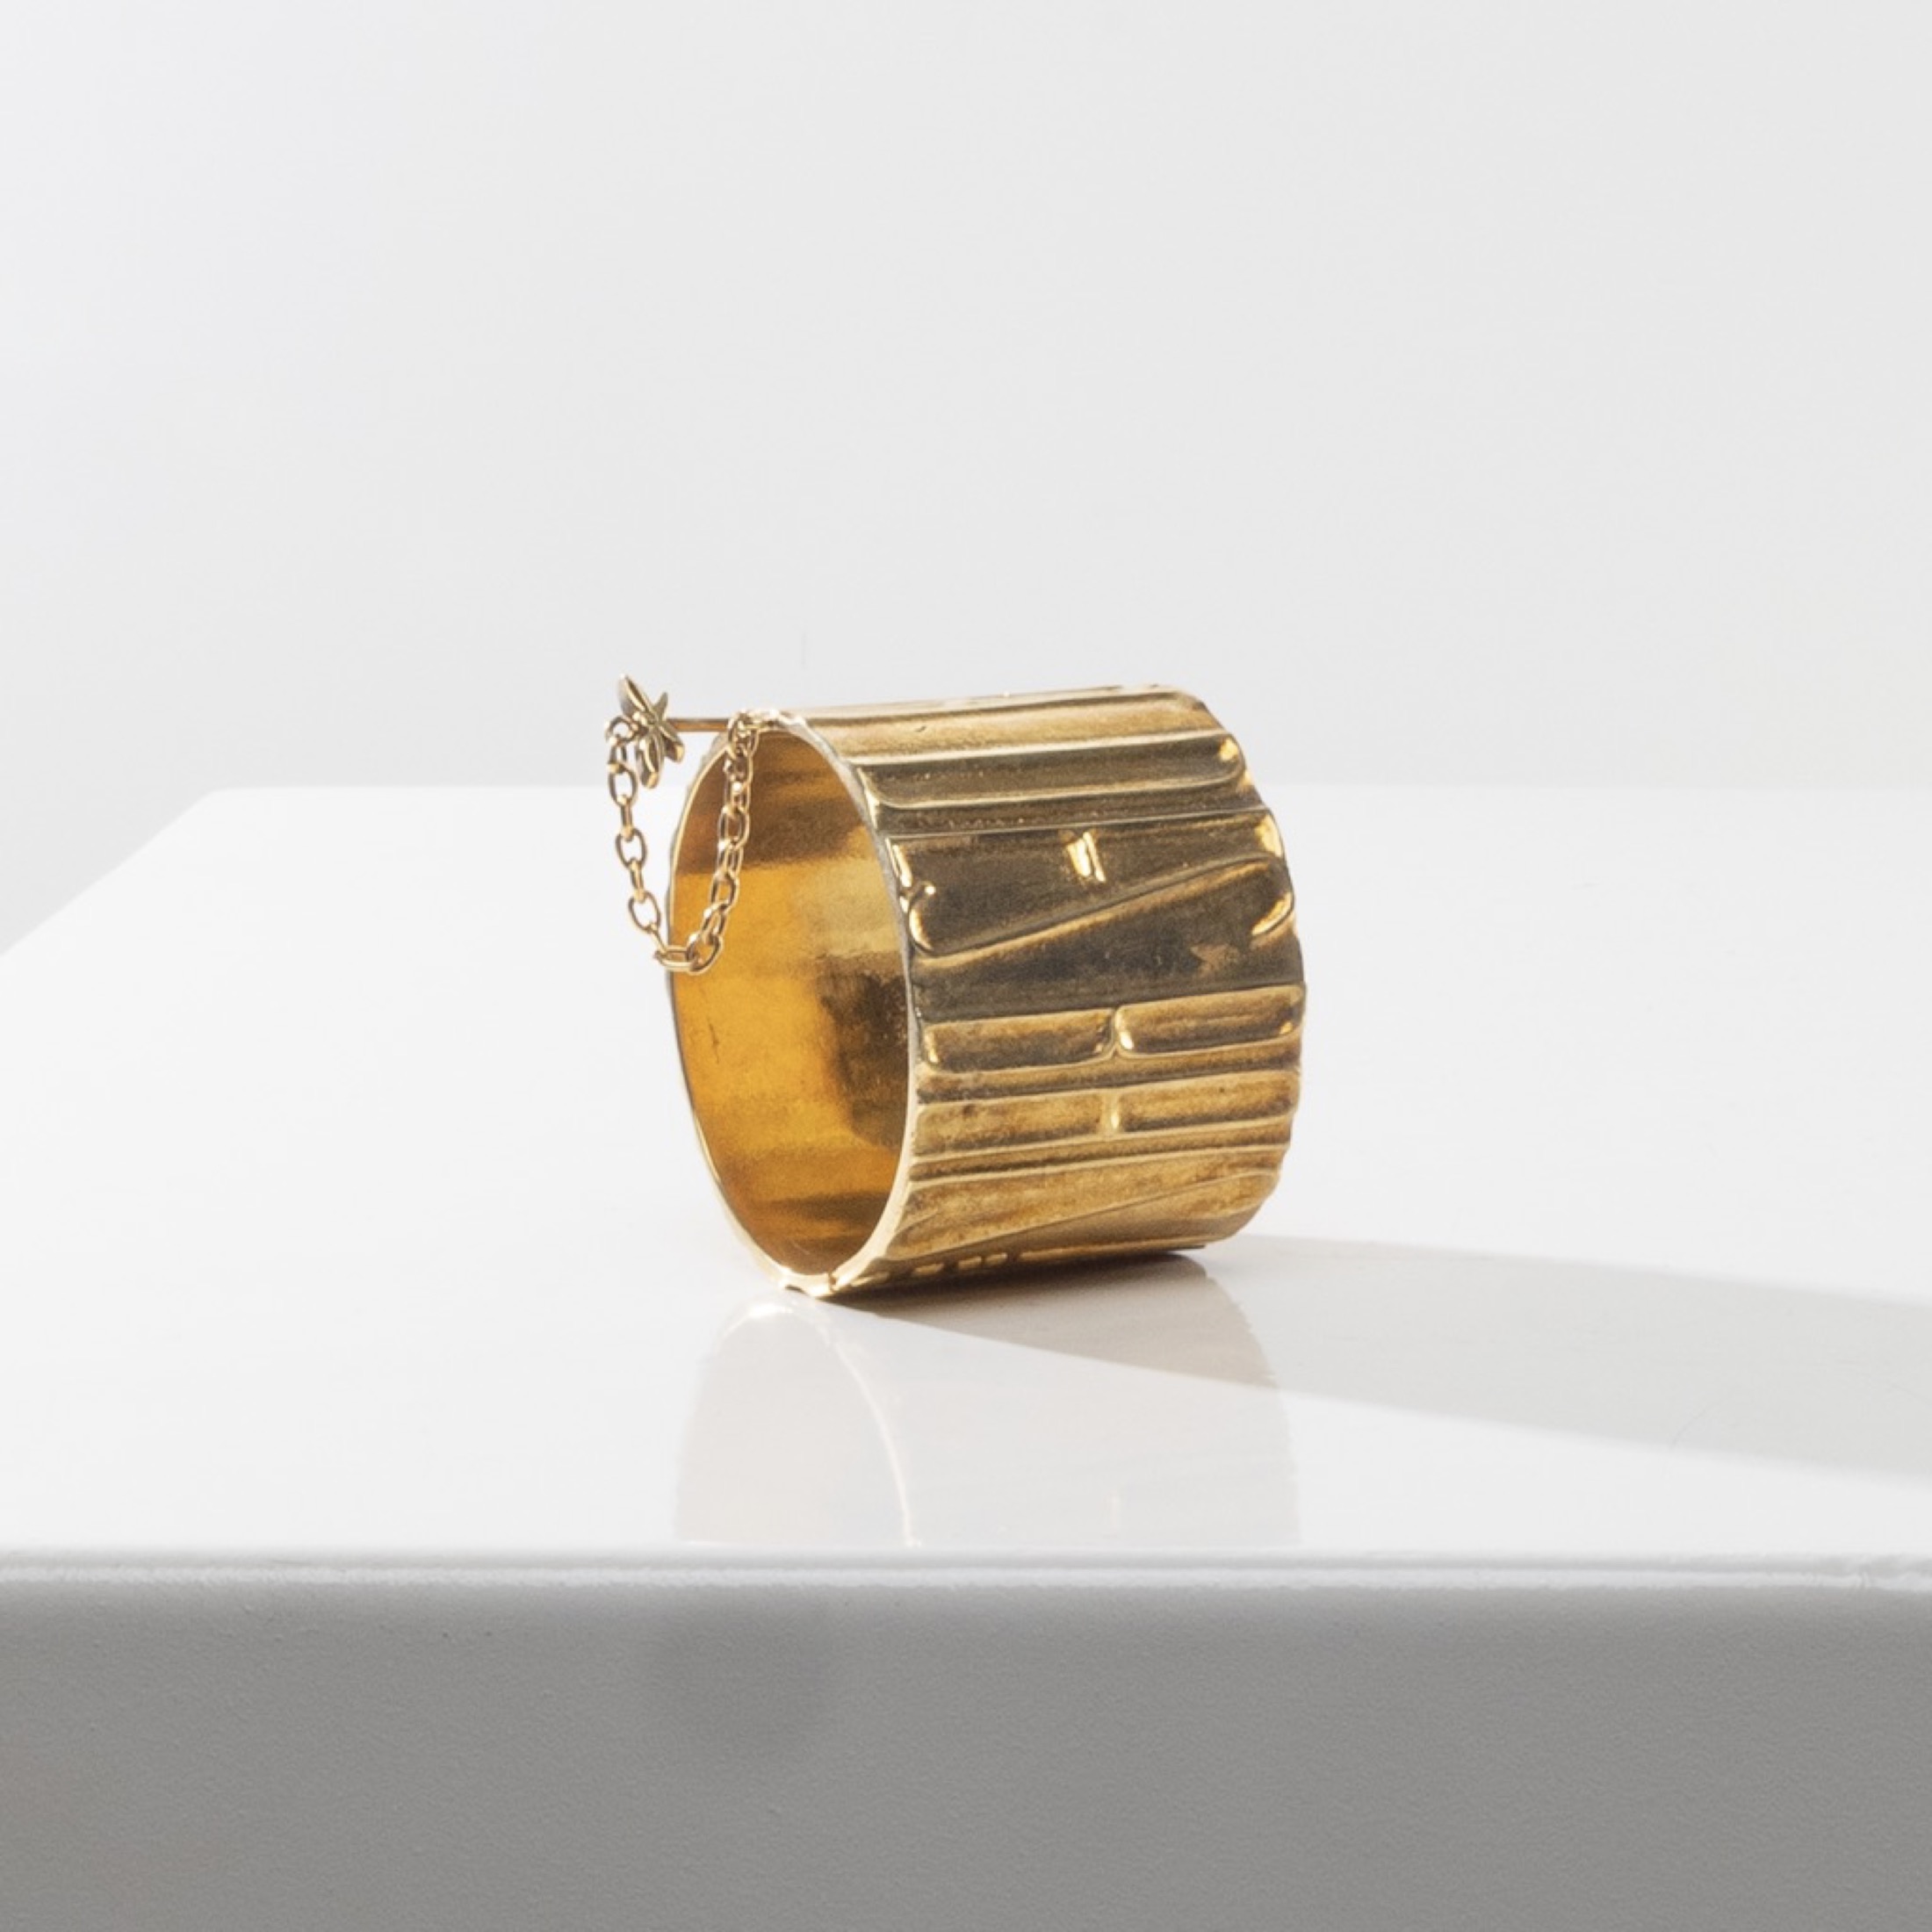 De la poudre et des bals by Line Vautrin - Gilt bronze armband - 06